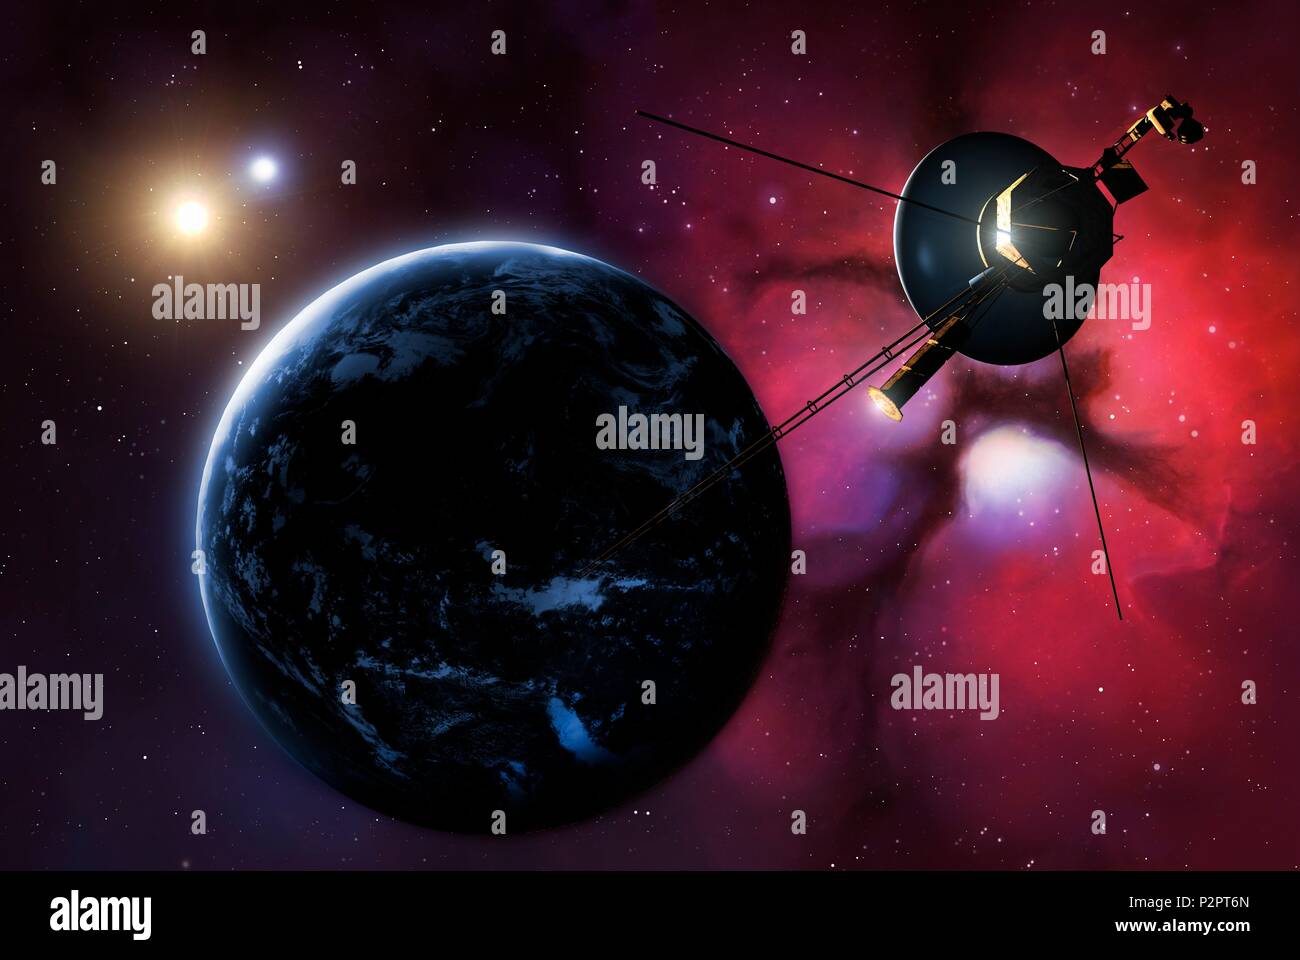 Illustrazione di una delle sonde Voyager passando un earthlike pianeta orbita un sistema stellare binario in un lontano futuro. Una nebulosa è visto in background. Le due sonde Voyager sono state avviate alla fine degli anni settanta. Voyager 1 ha ora superato in spazio interstellare - oltre l'influenza del sole del campo magnetico - e Voyager 2 è impostato per fare in modo che nei primi 2020s. Foto Stock